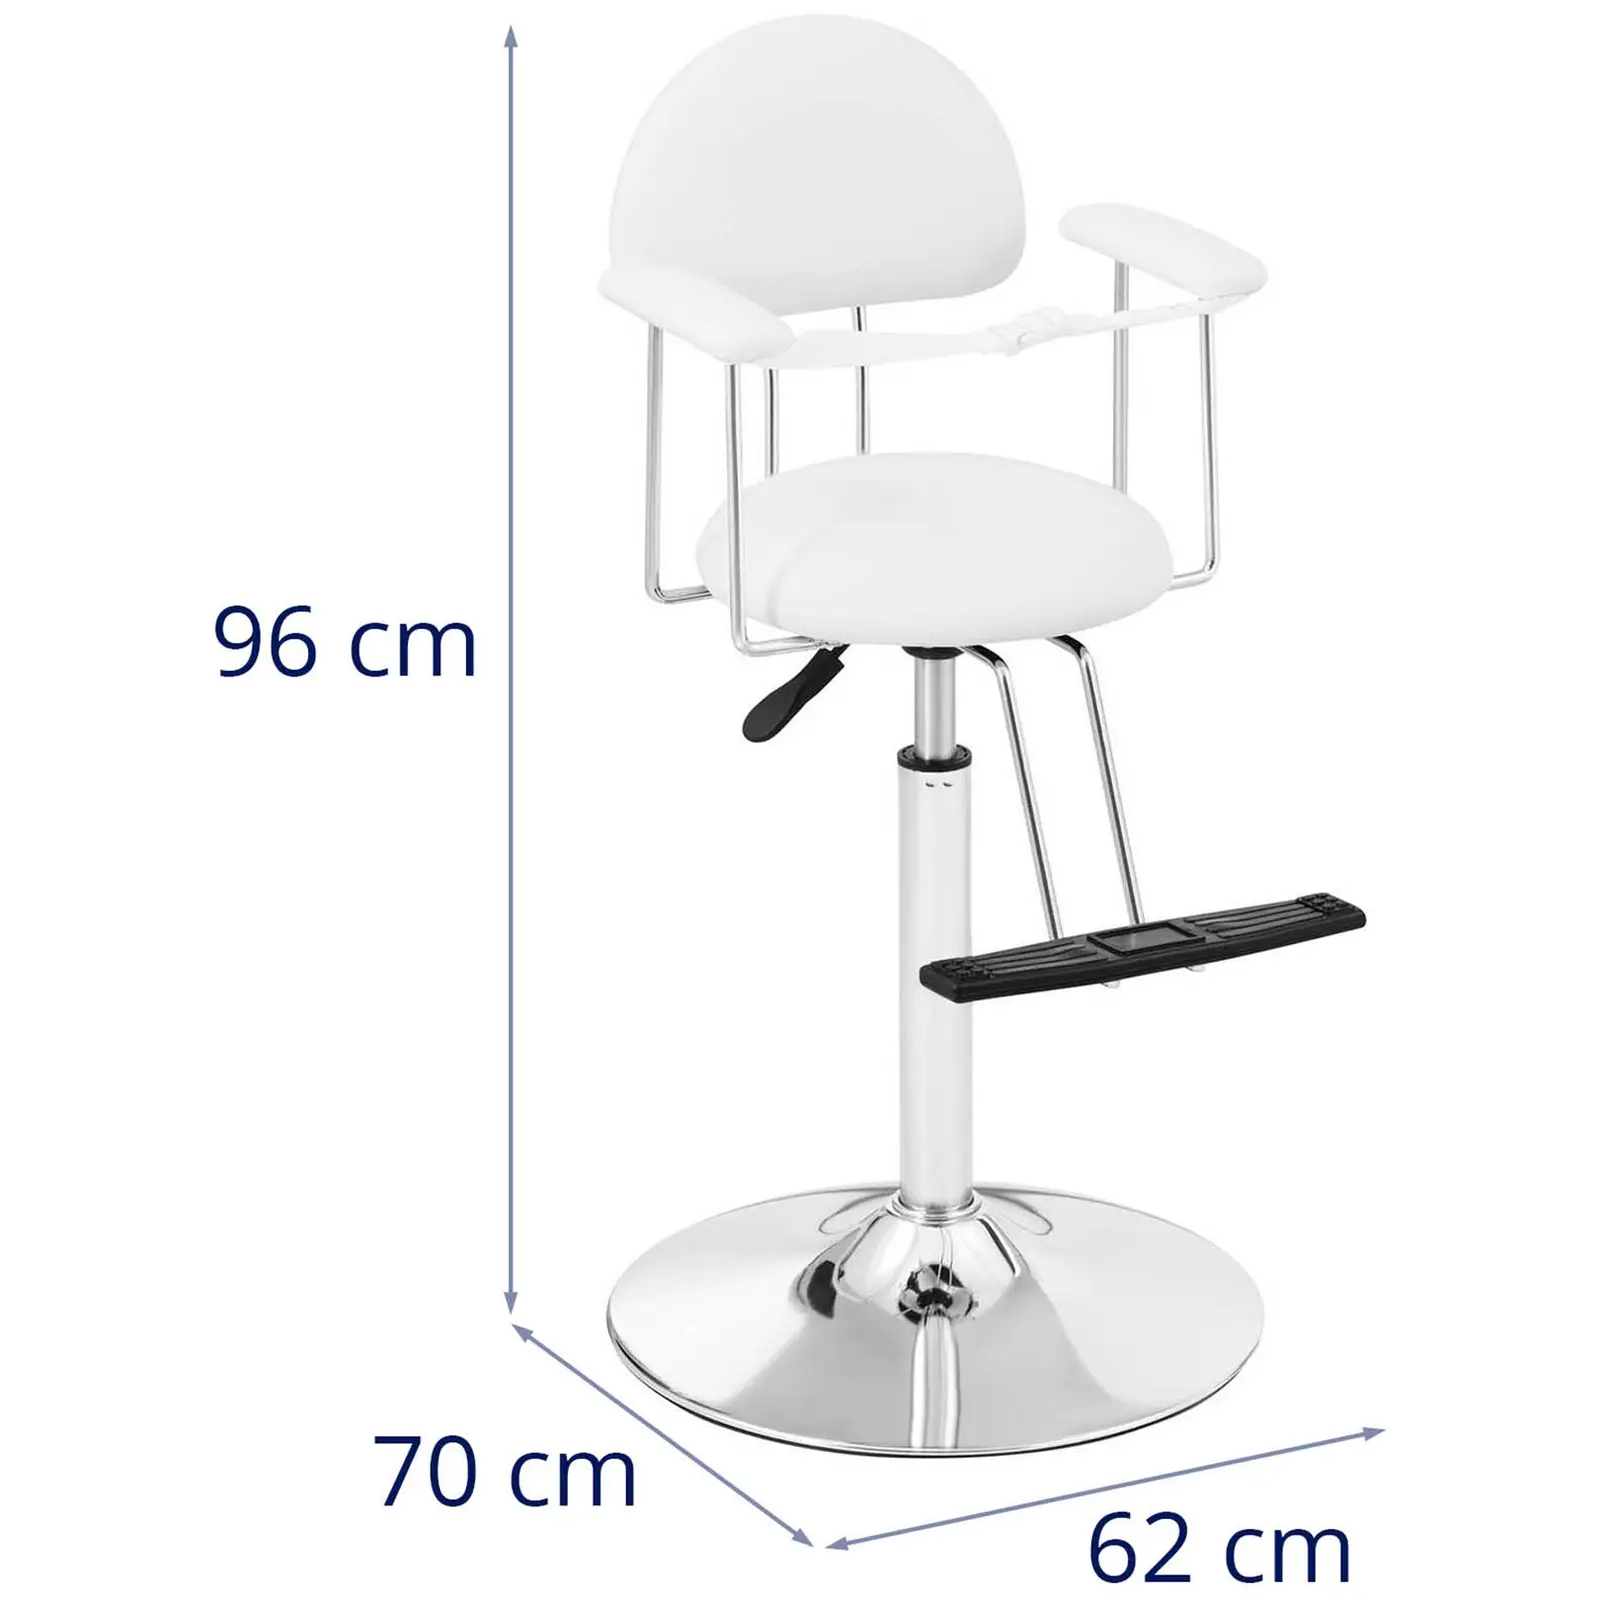 Cadeira de cabeleireiro infantil - 860-1110 mm - 125 kg - Branco